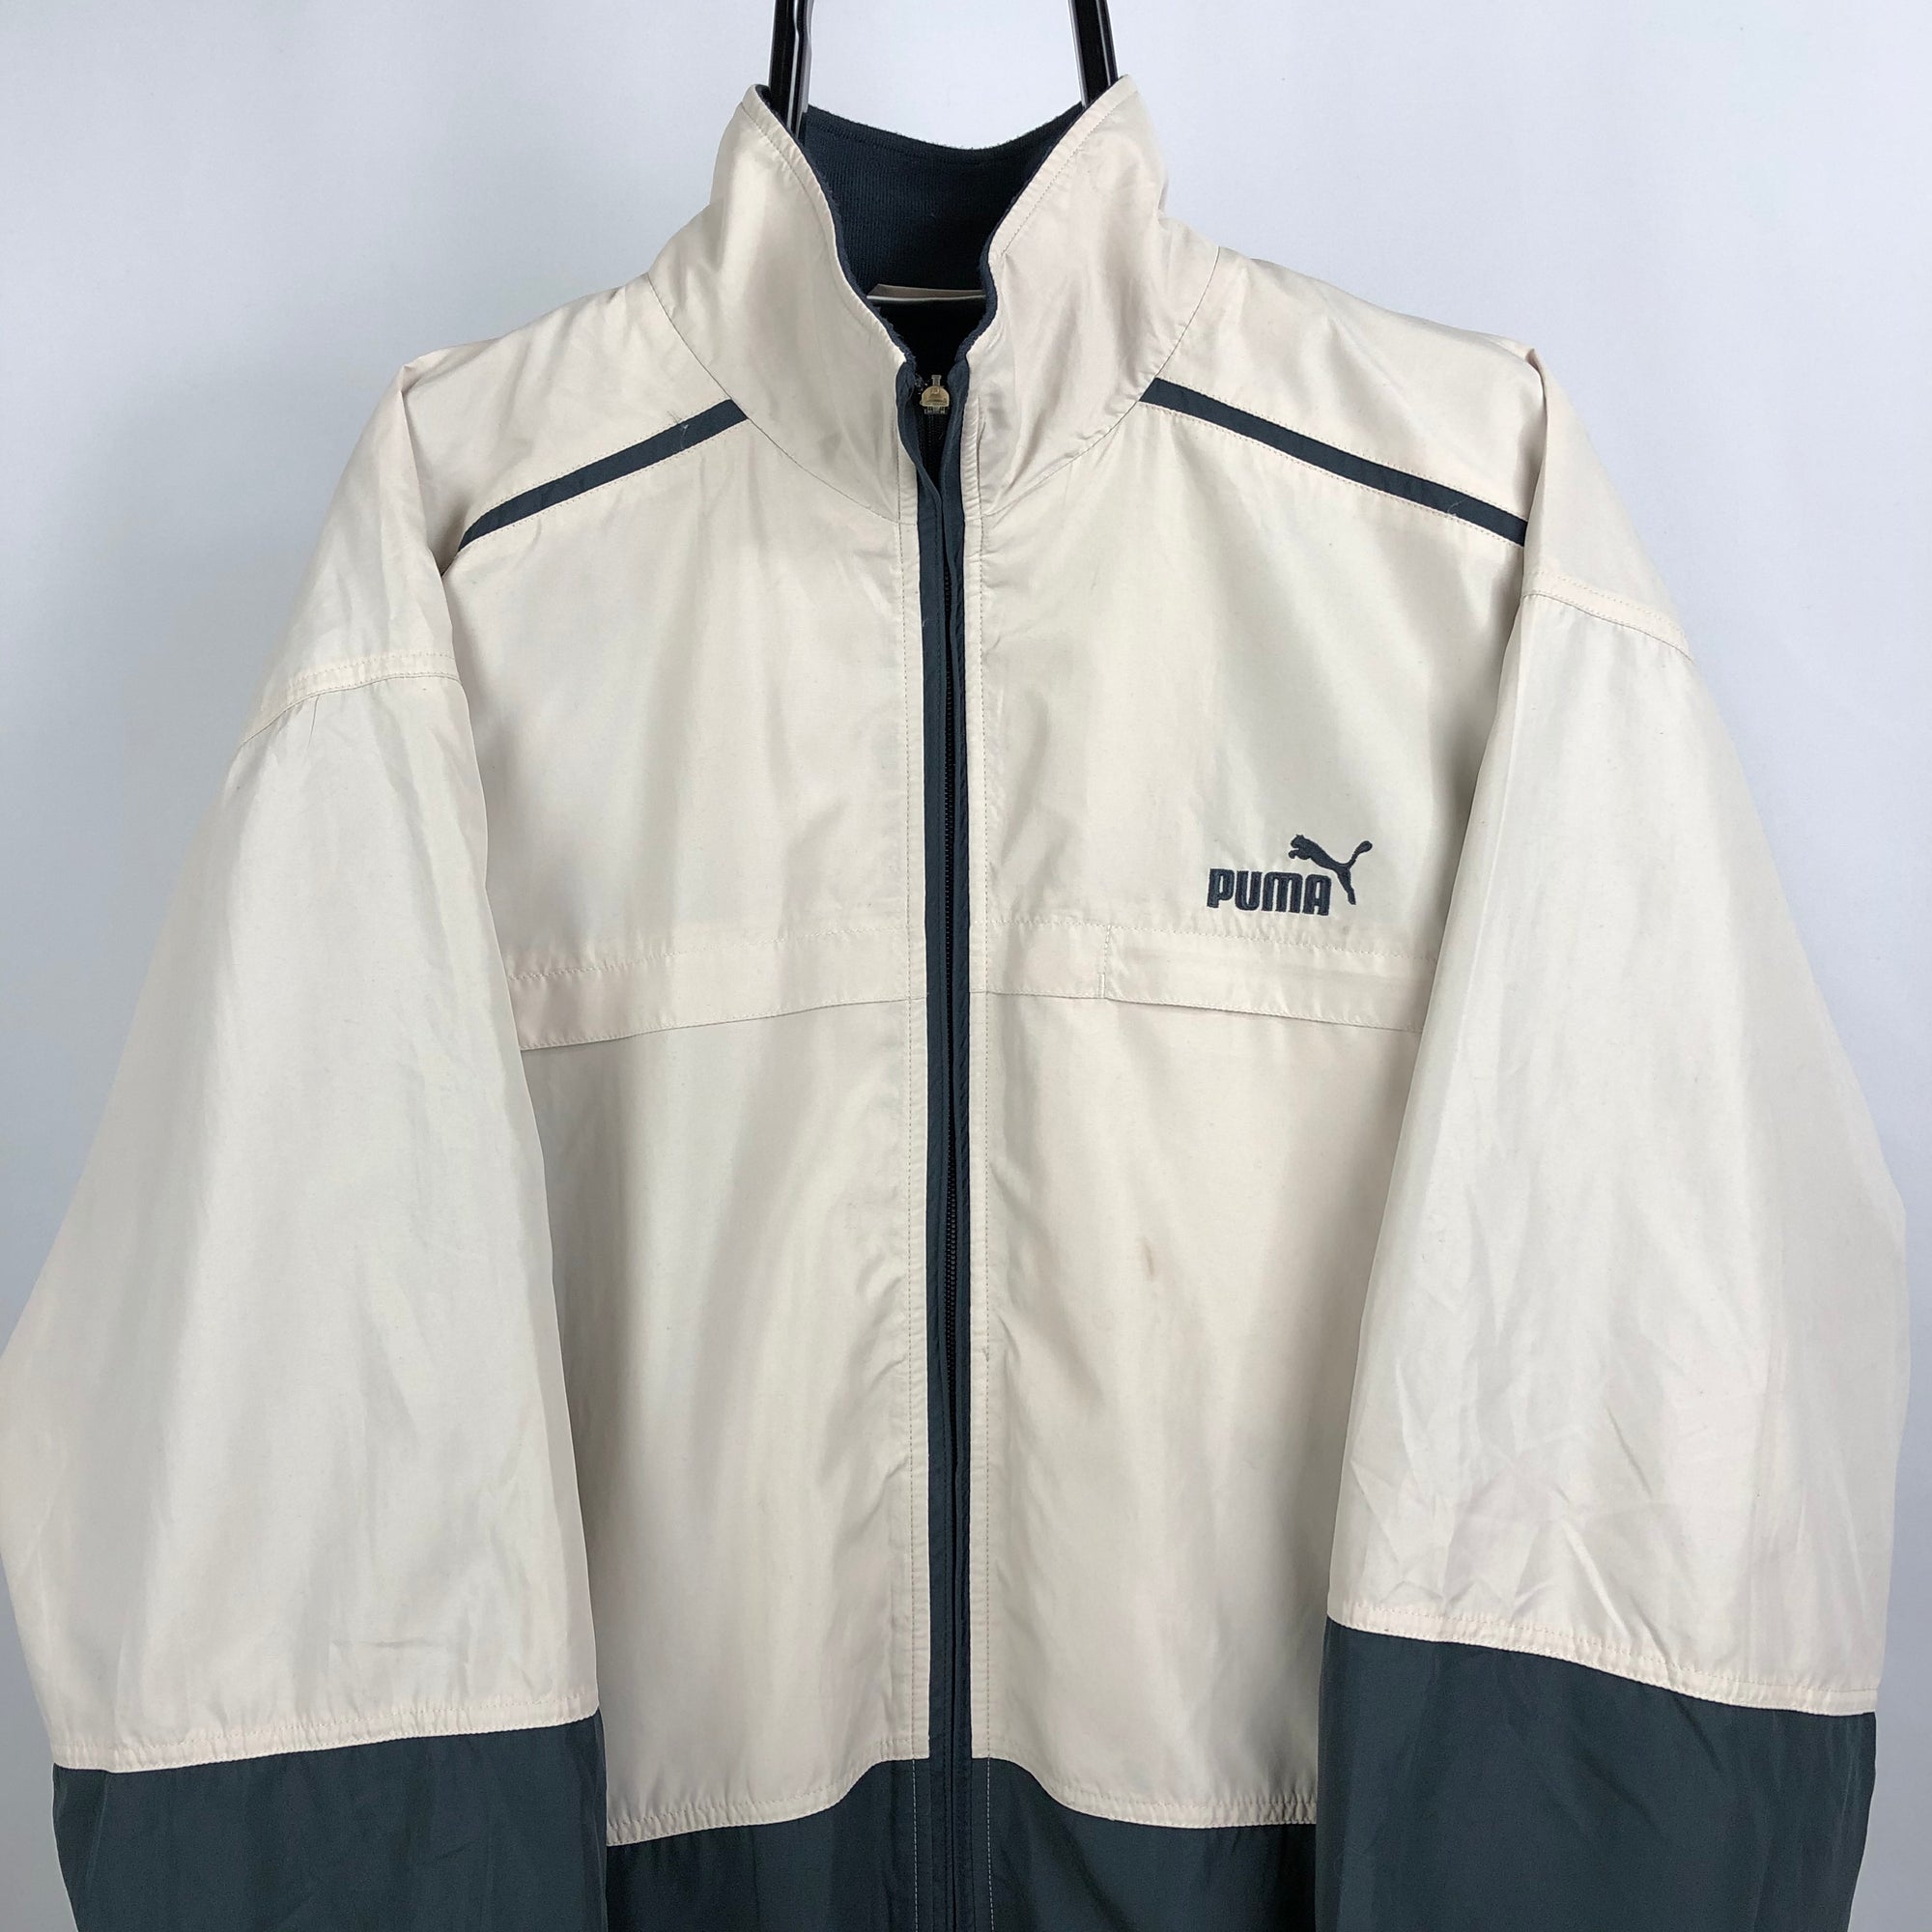 Vintage Puma Track Jacket in Beige + Dark Grey - Men's Large/Women's XL